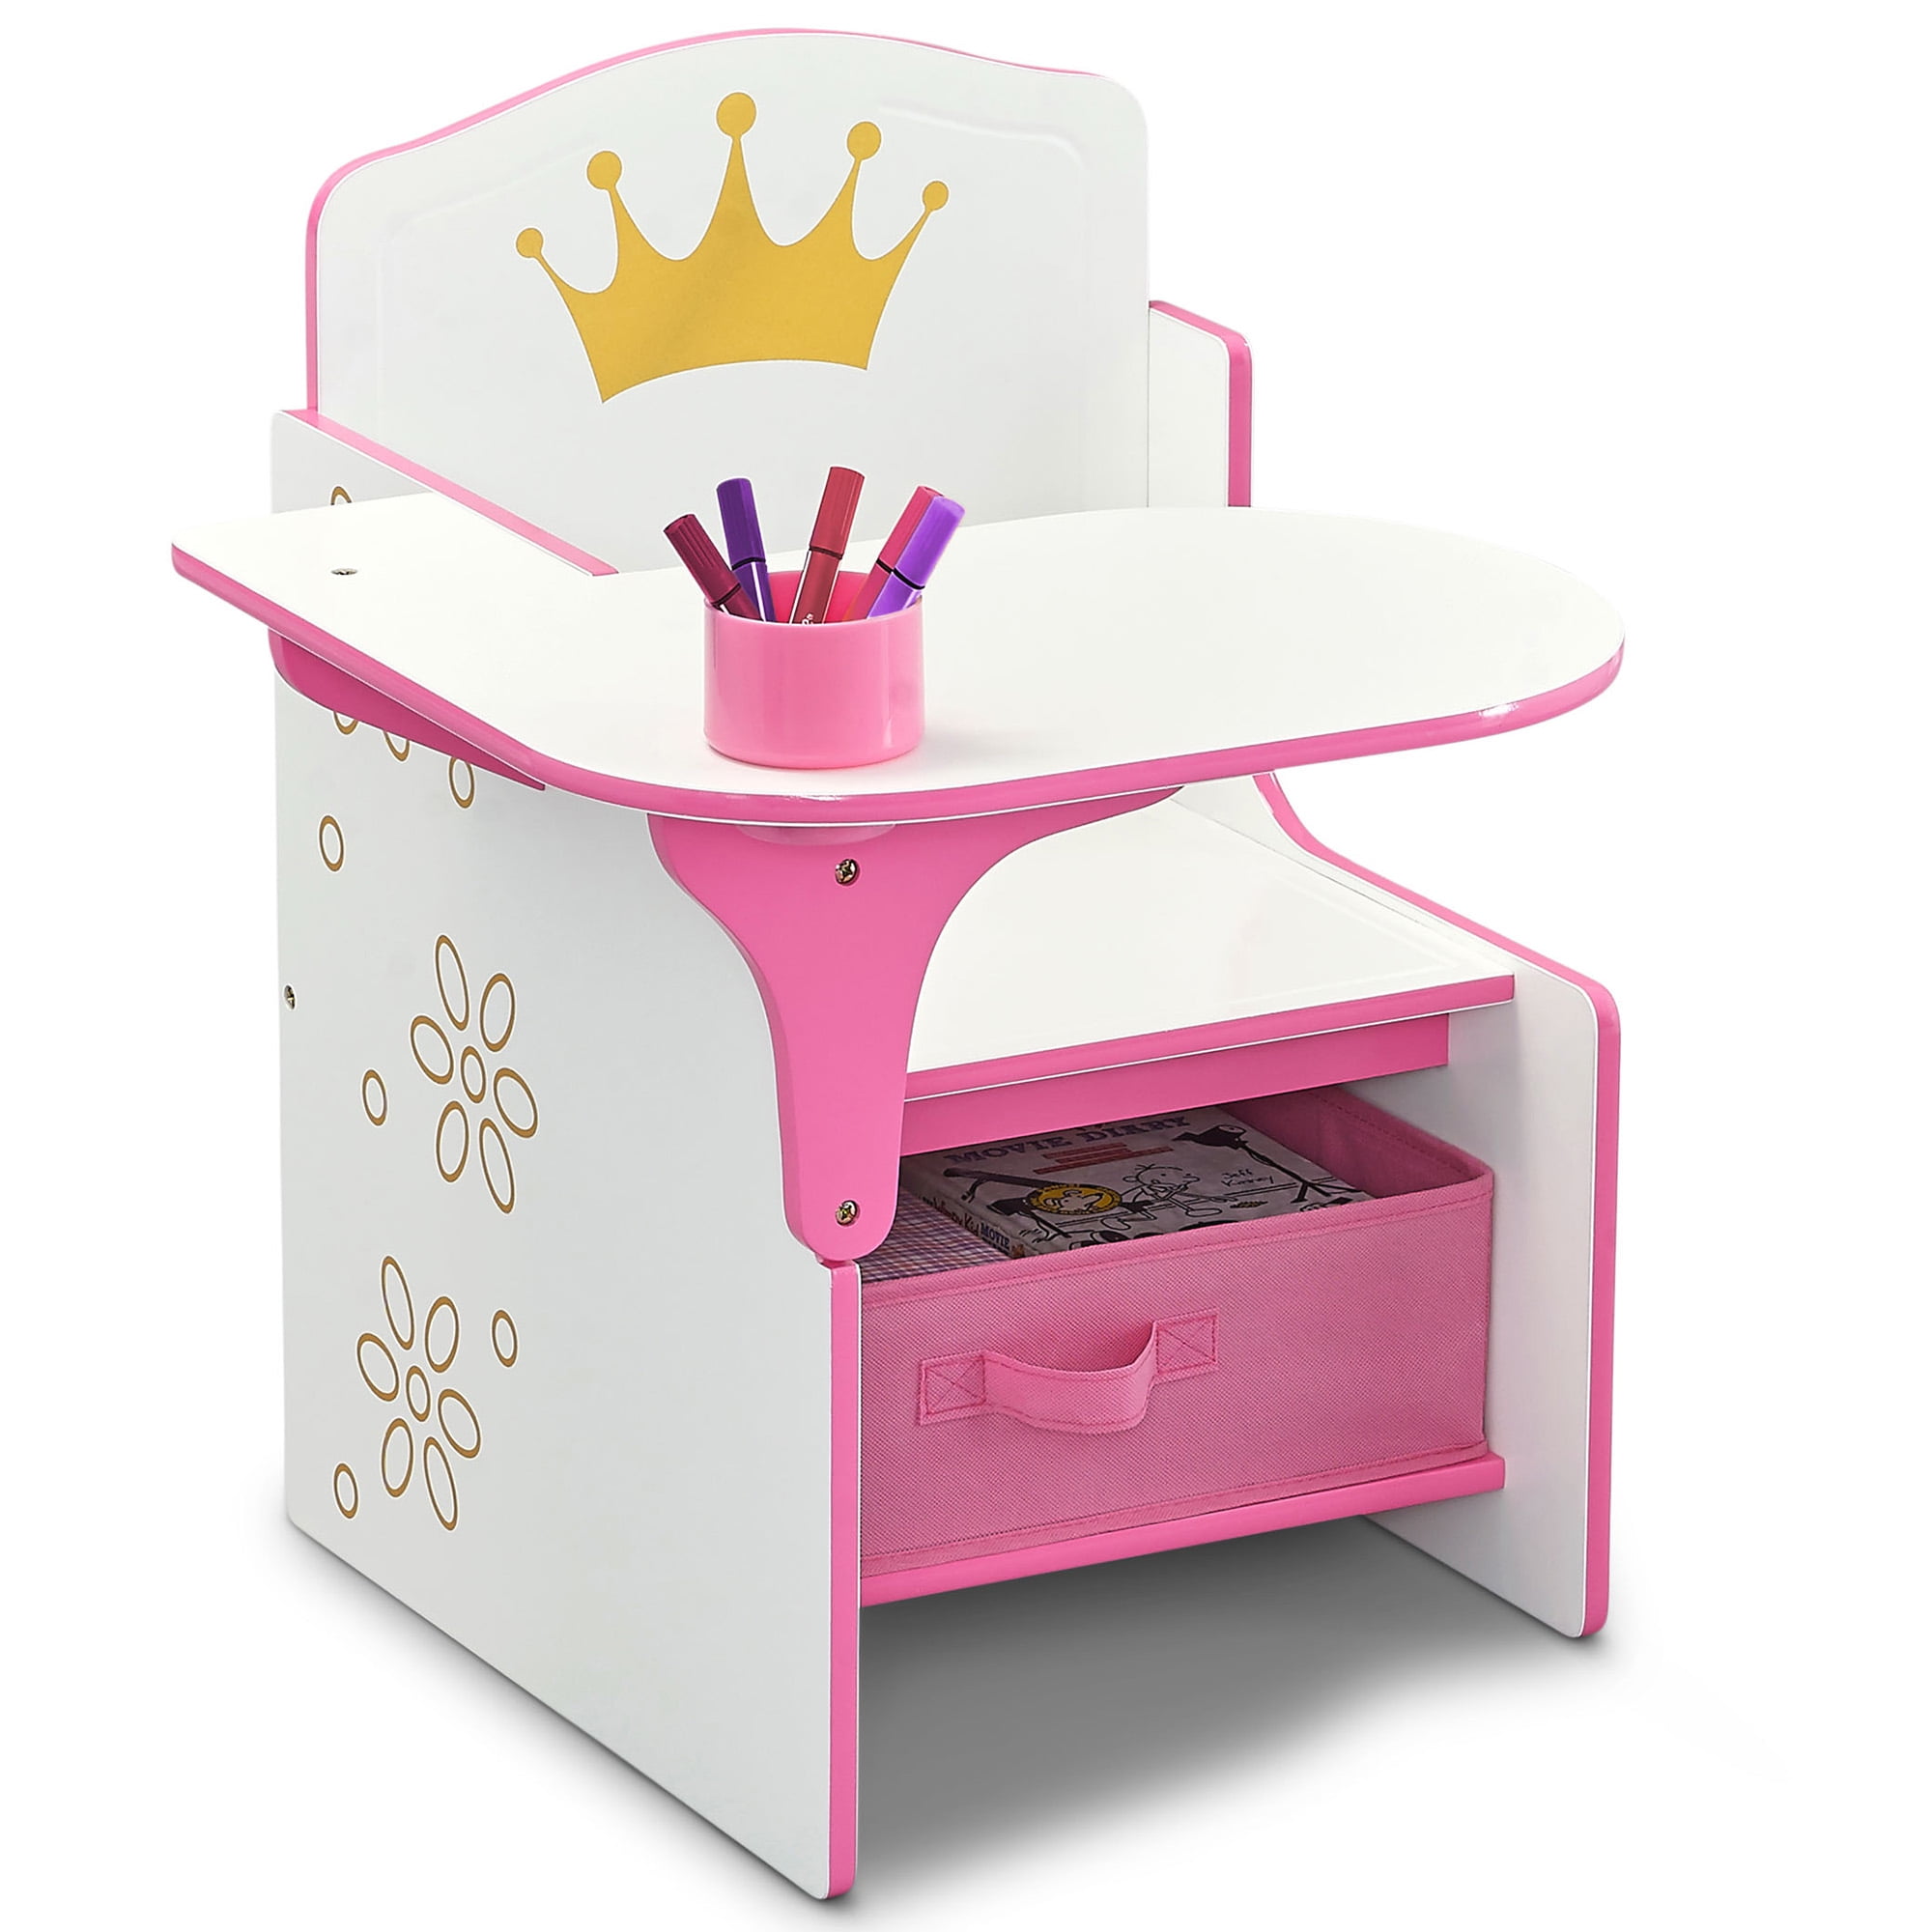 Delta Children Princess Crown Chair Desk with Storage Bin, Greenguard Gold Certified - 1